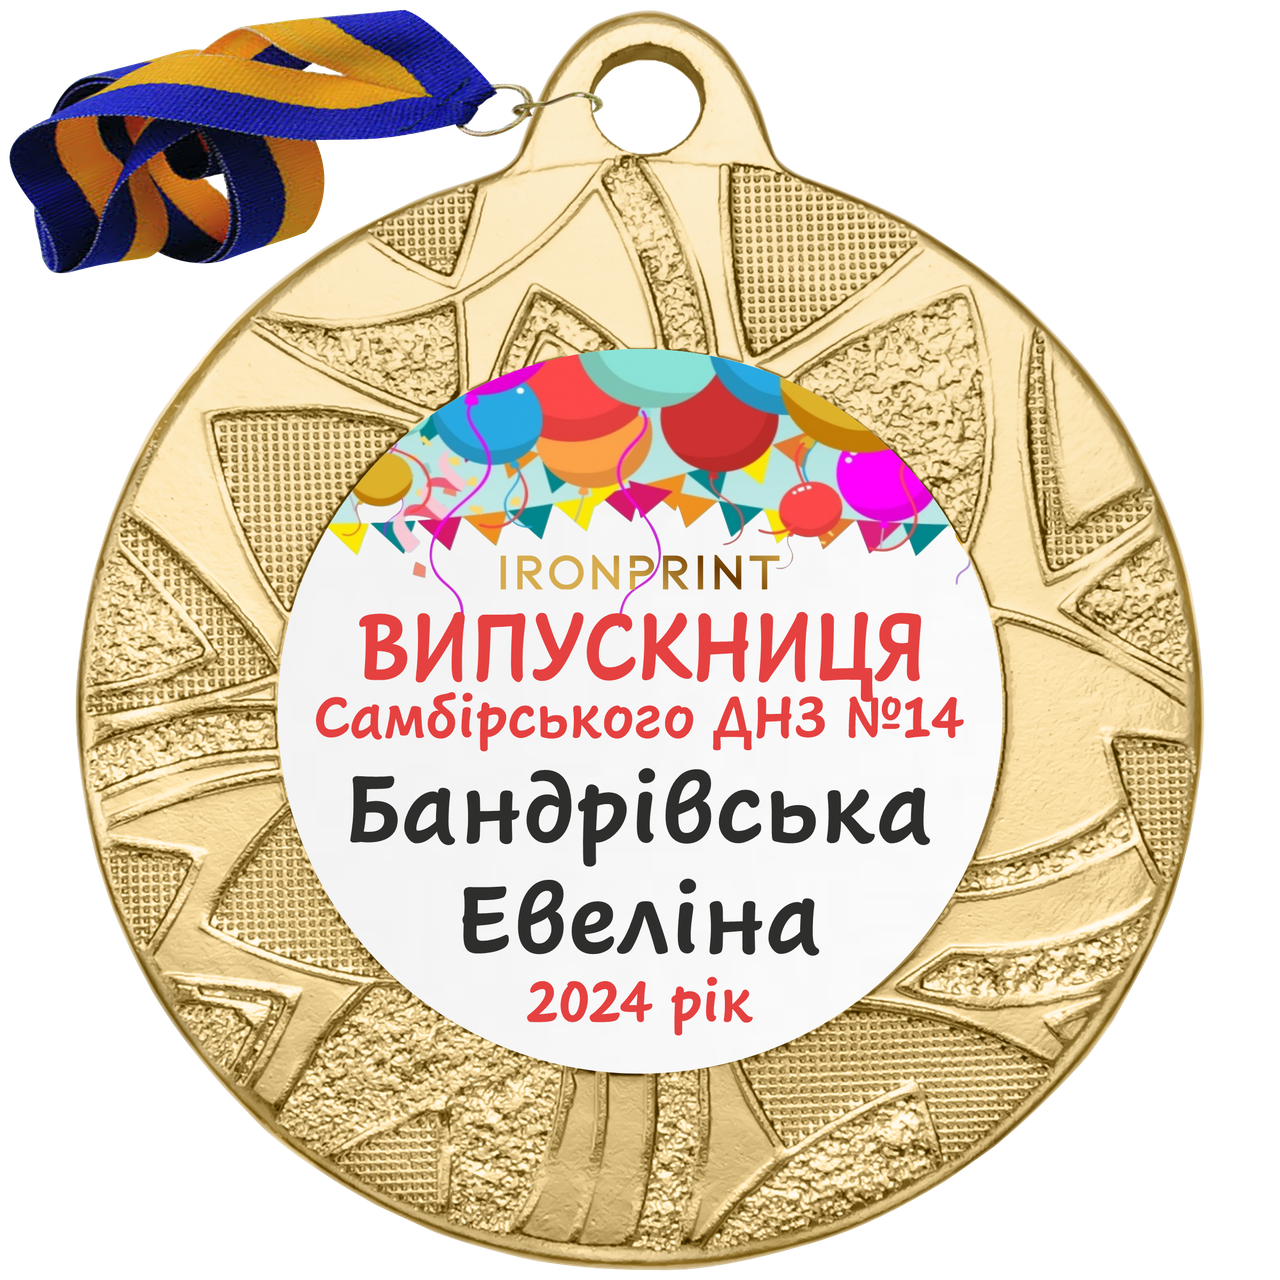 Медальки для випускників дитячого садка 40 мм, іменні металеві медалі на випускний у дитячому садку, медаль випускникам у садок